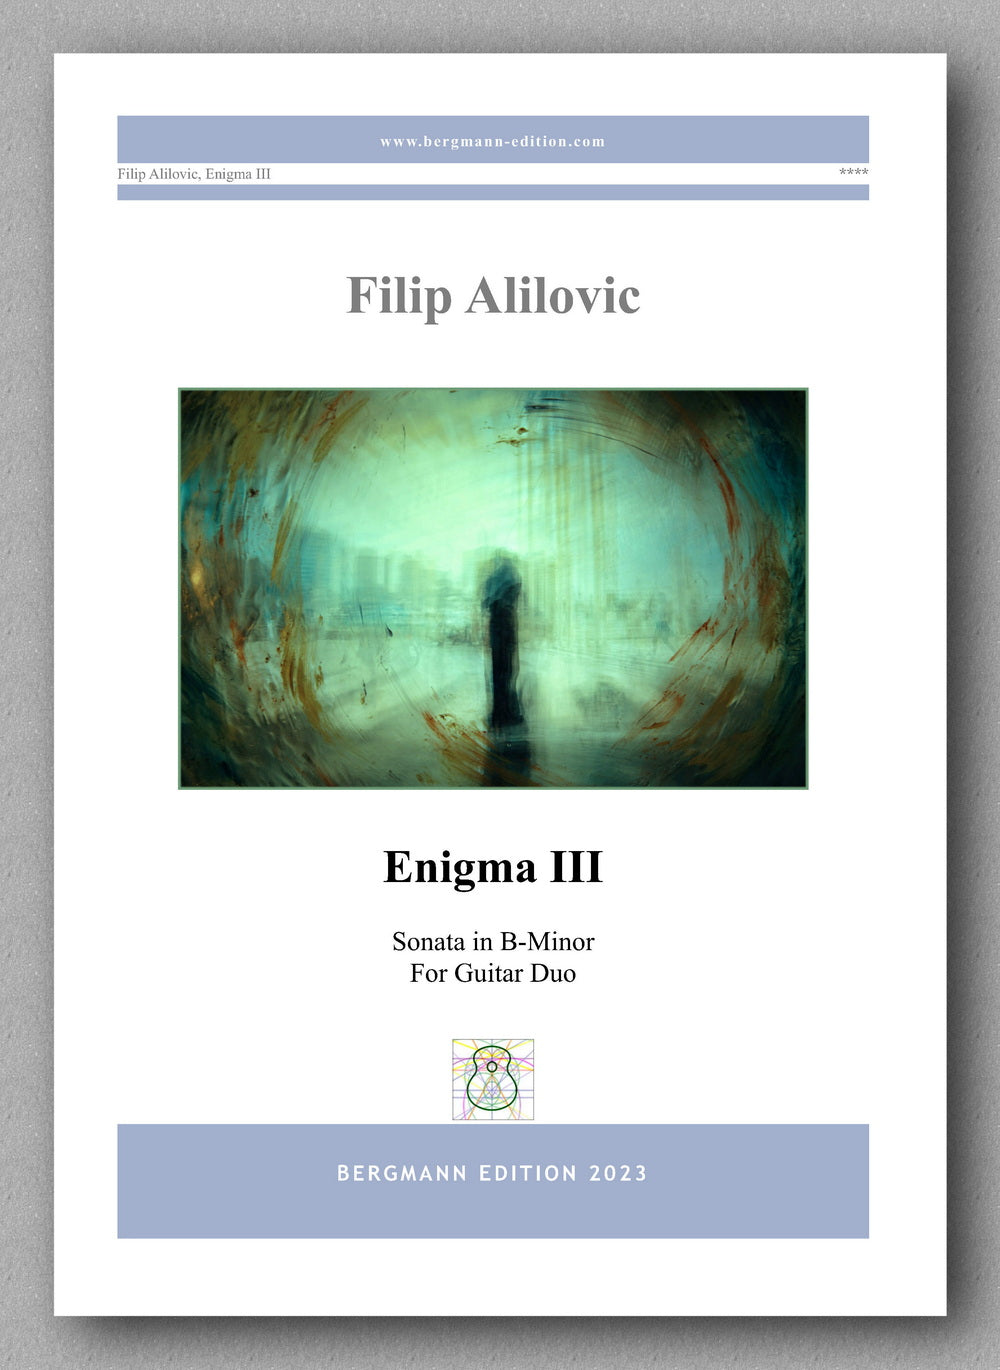 Filip Alilovic, Enigma III - preview of the cover